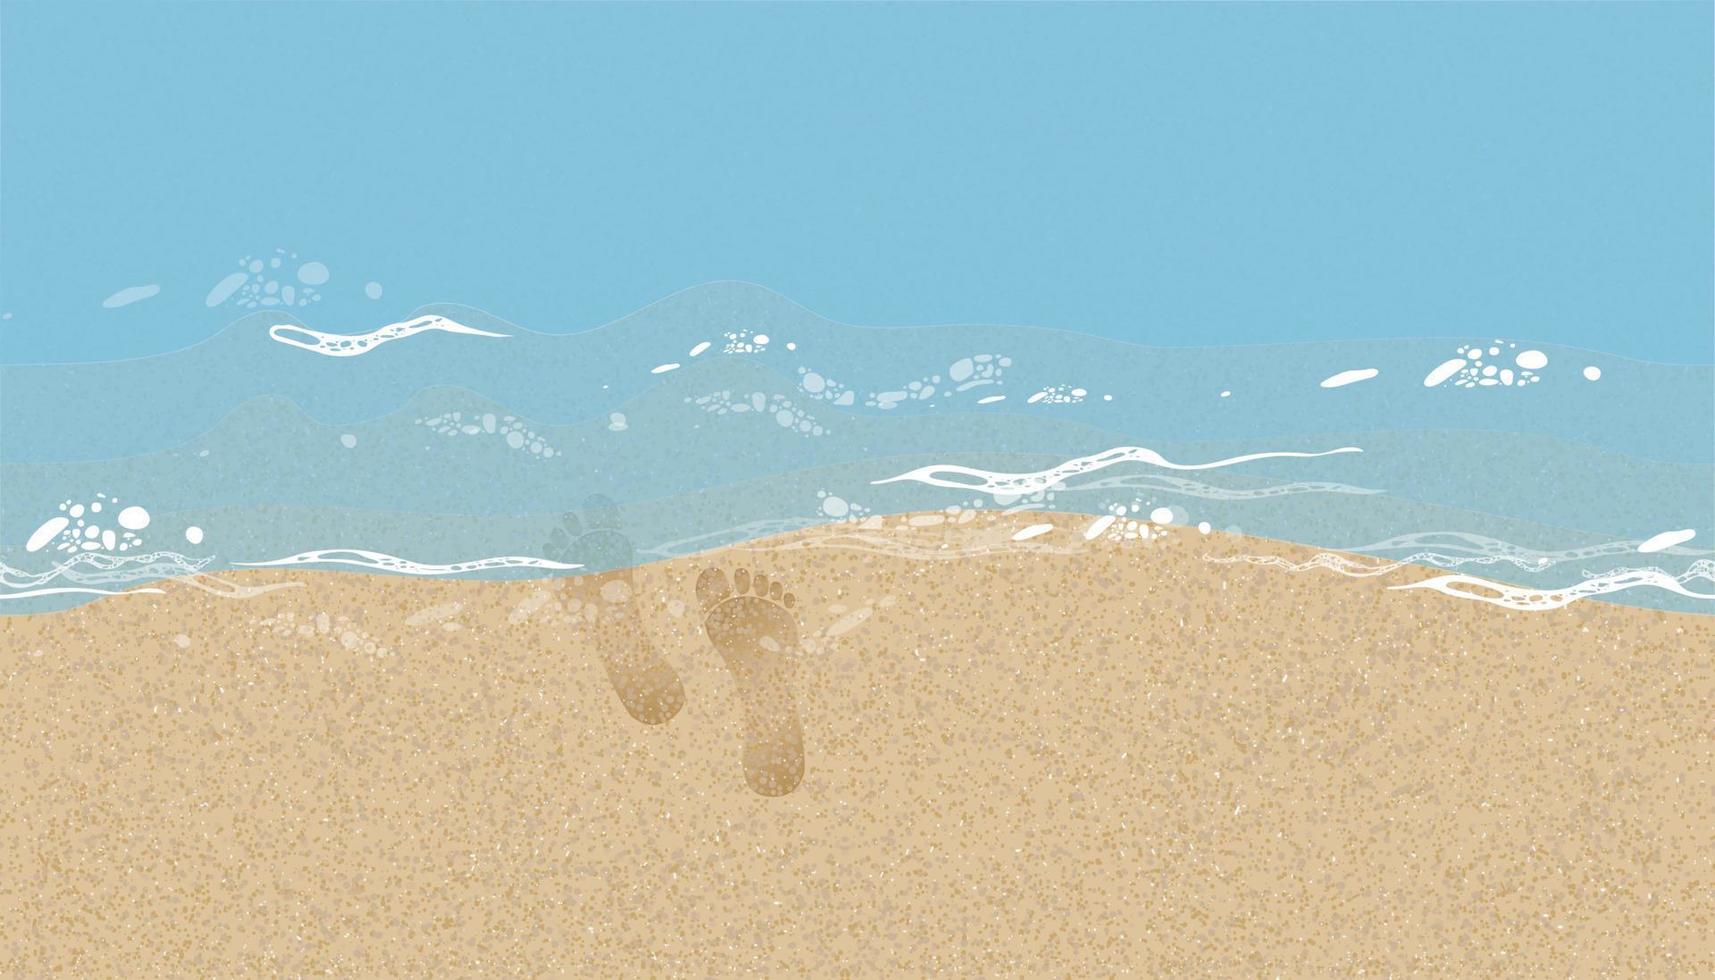 strand zand naadloze patroon met zee blauw water achtergrond, voetafdrukken van menselijke voeten op het zand texture.vector illustratie achtergrond bruin strand zandduin met blote voeten op zee Golf voor zomer banner vector